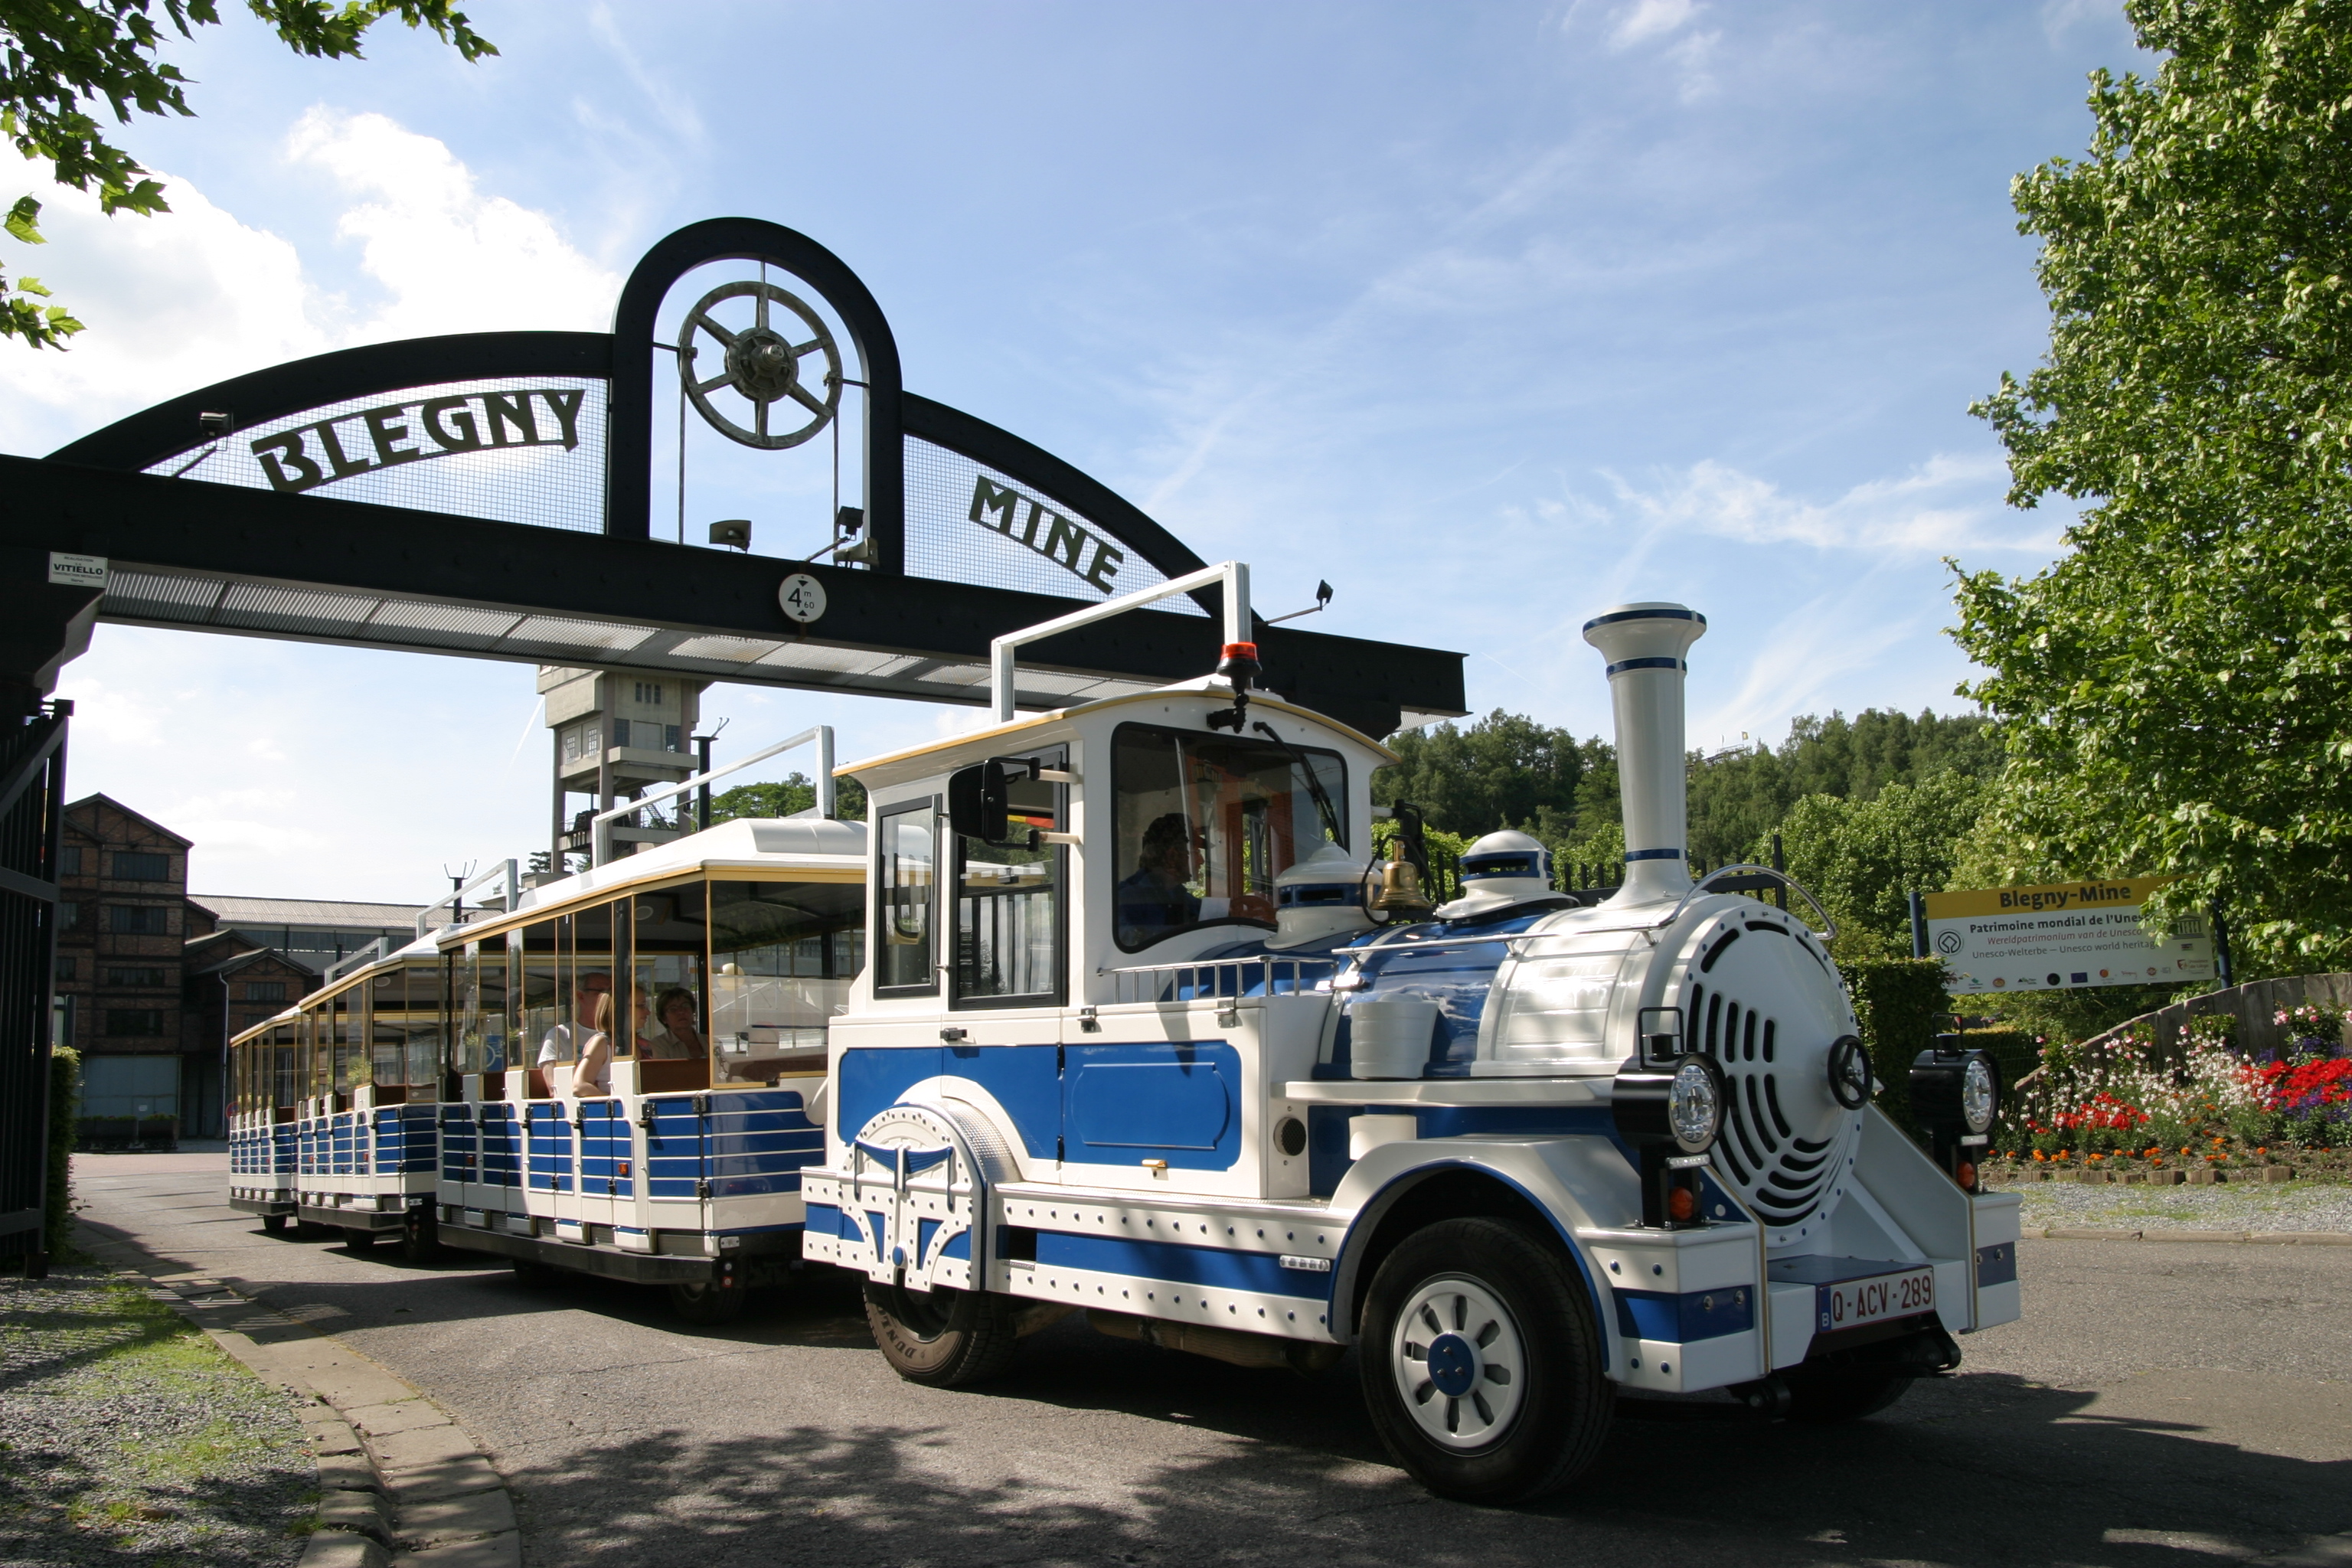 Le petit train touristique de Blegny-Mine